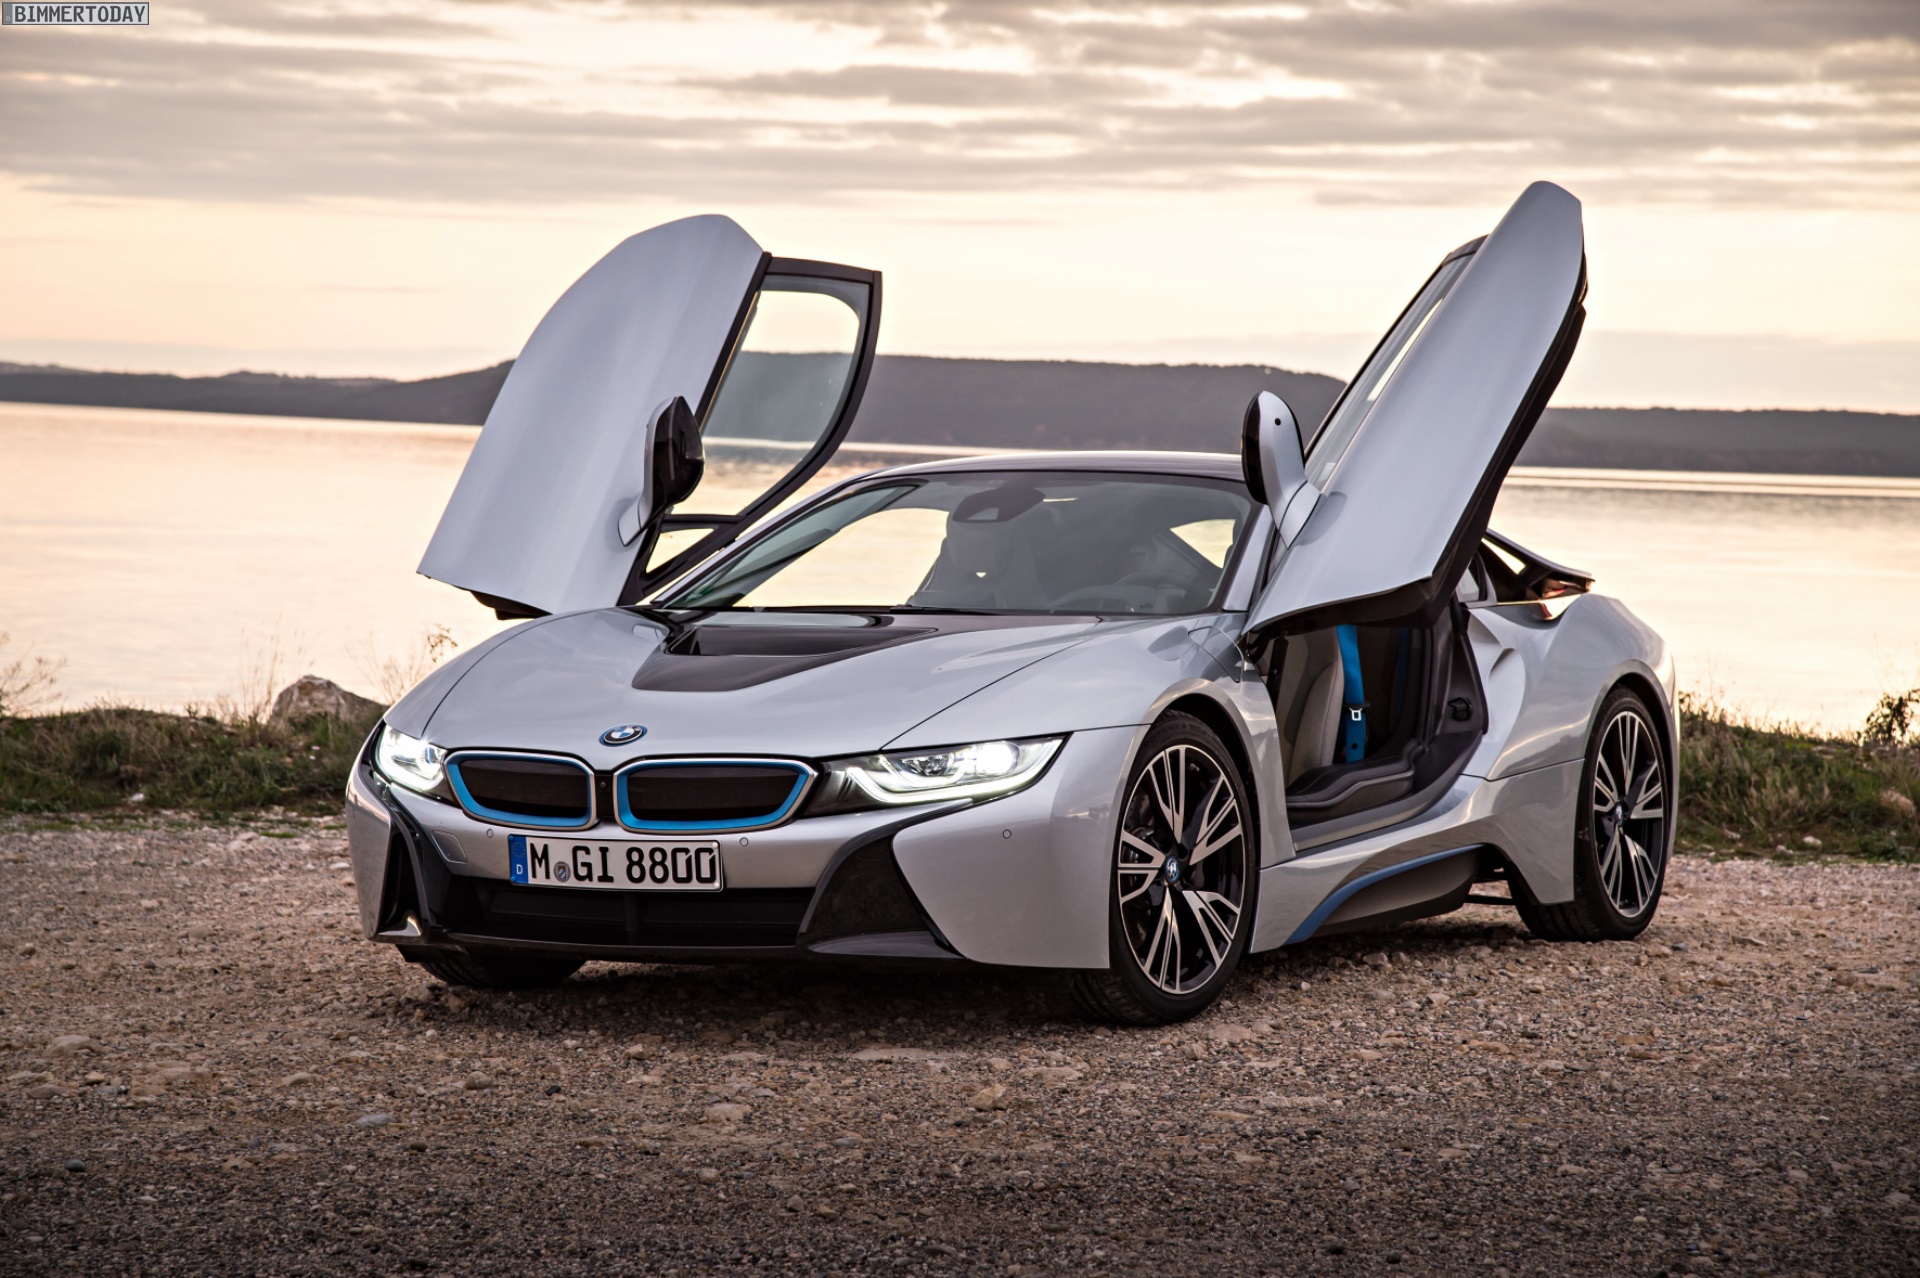 BAA15: Klassensiege für BMW i3 & i8 beim Blogger Auto Award 2015